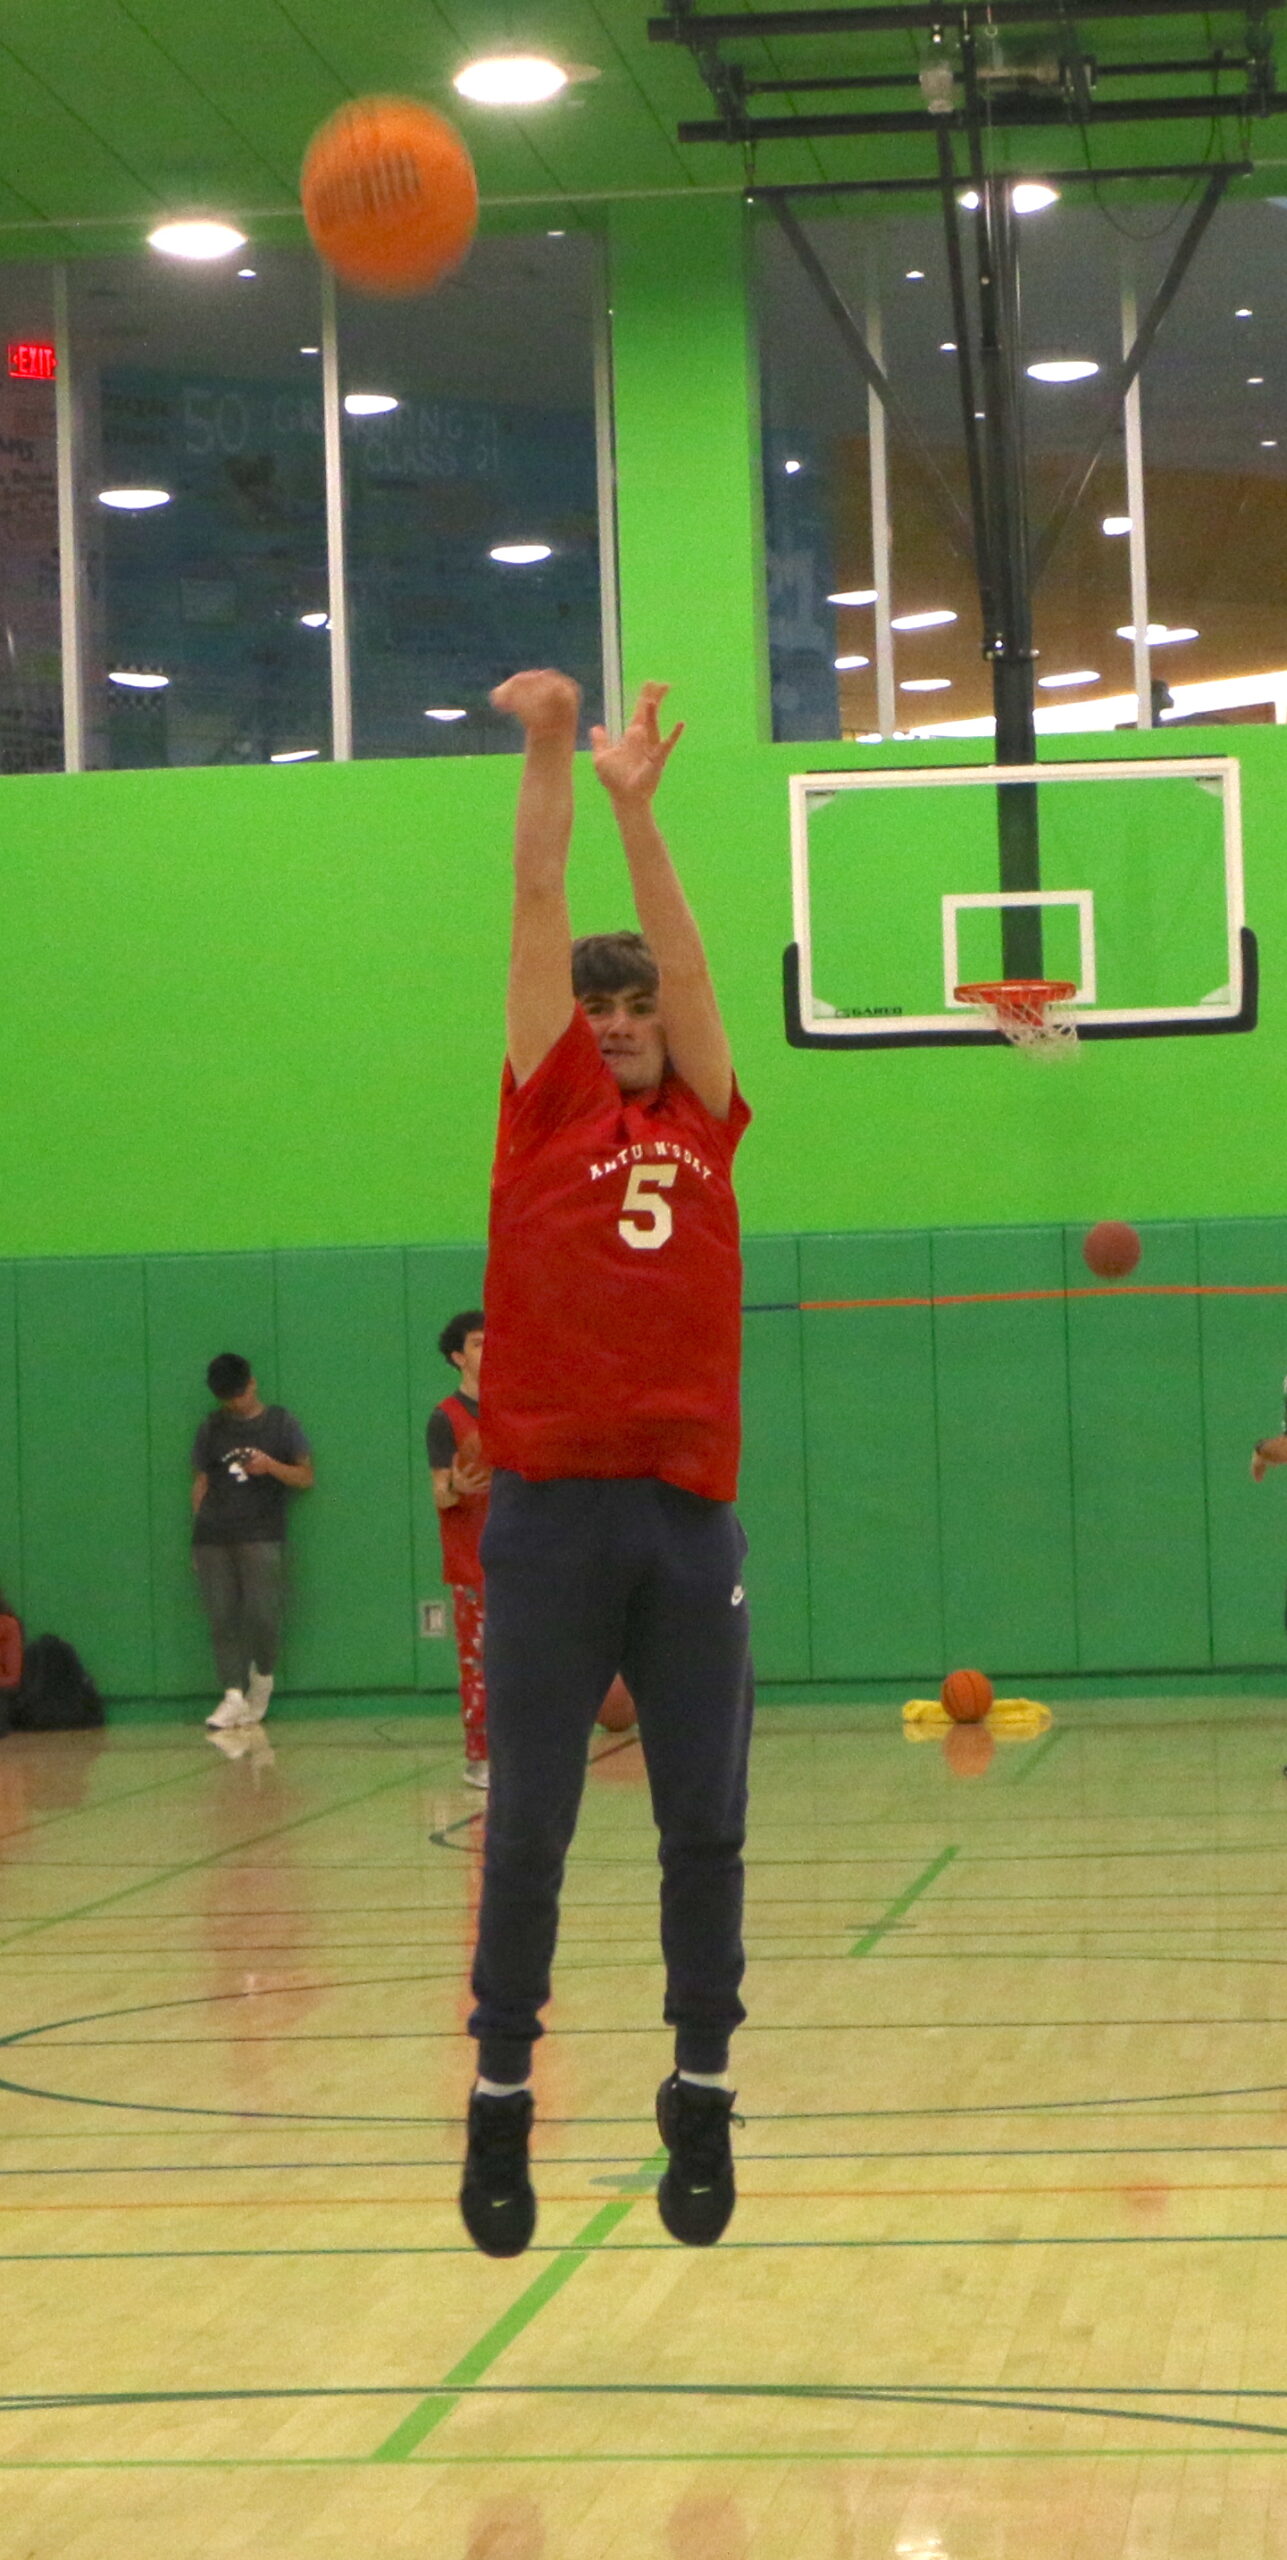 Student shooting a basketball